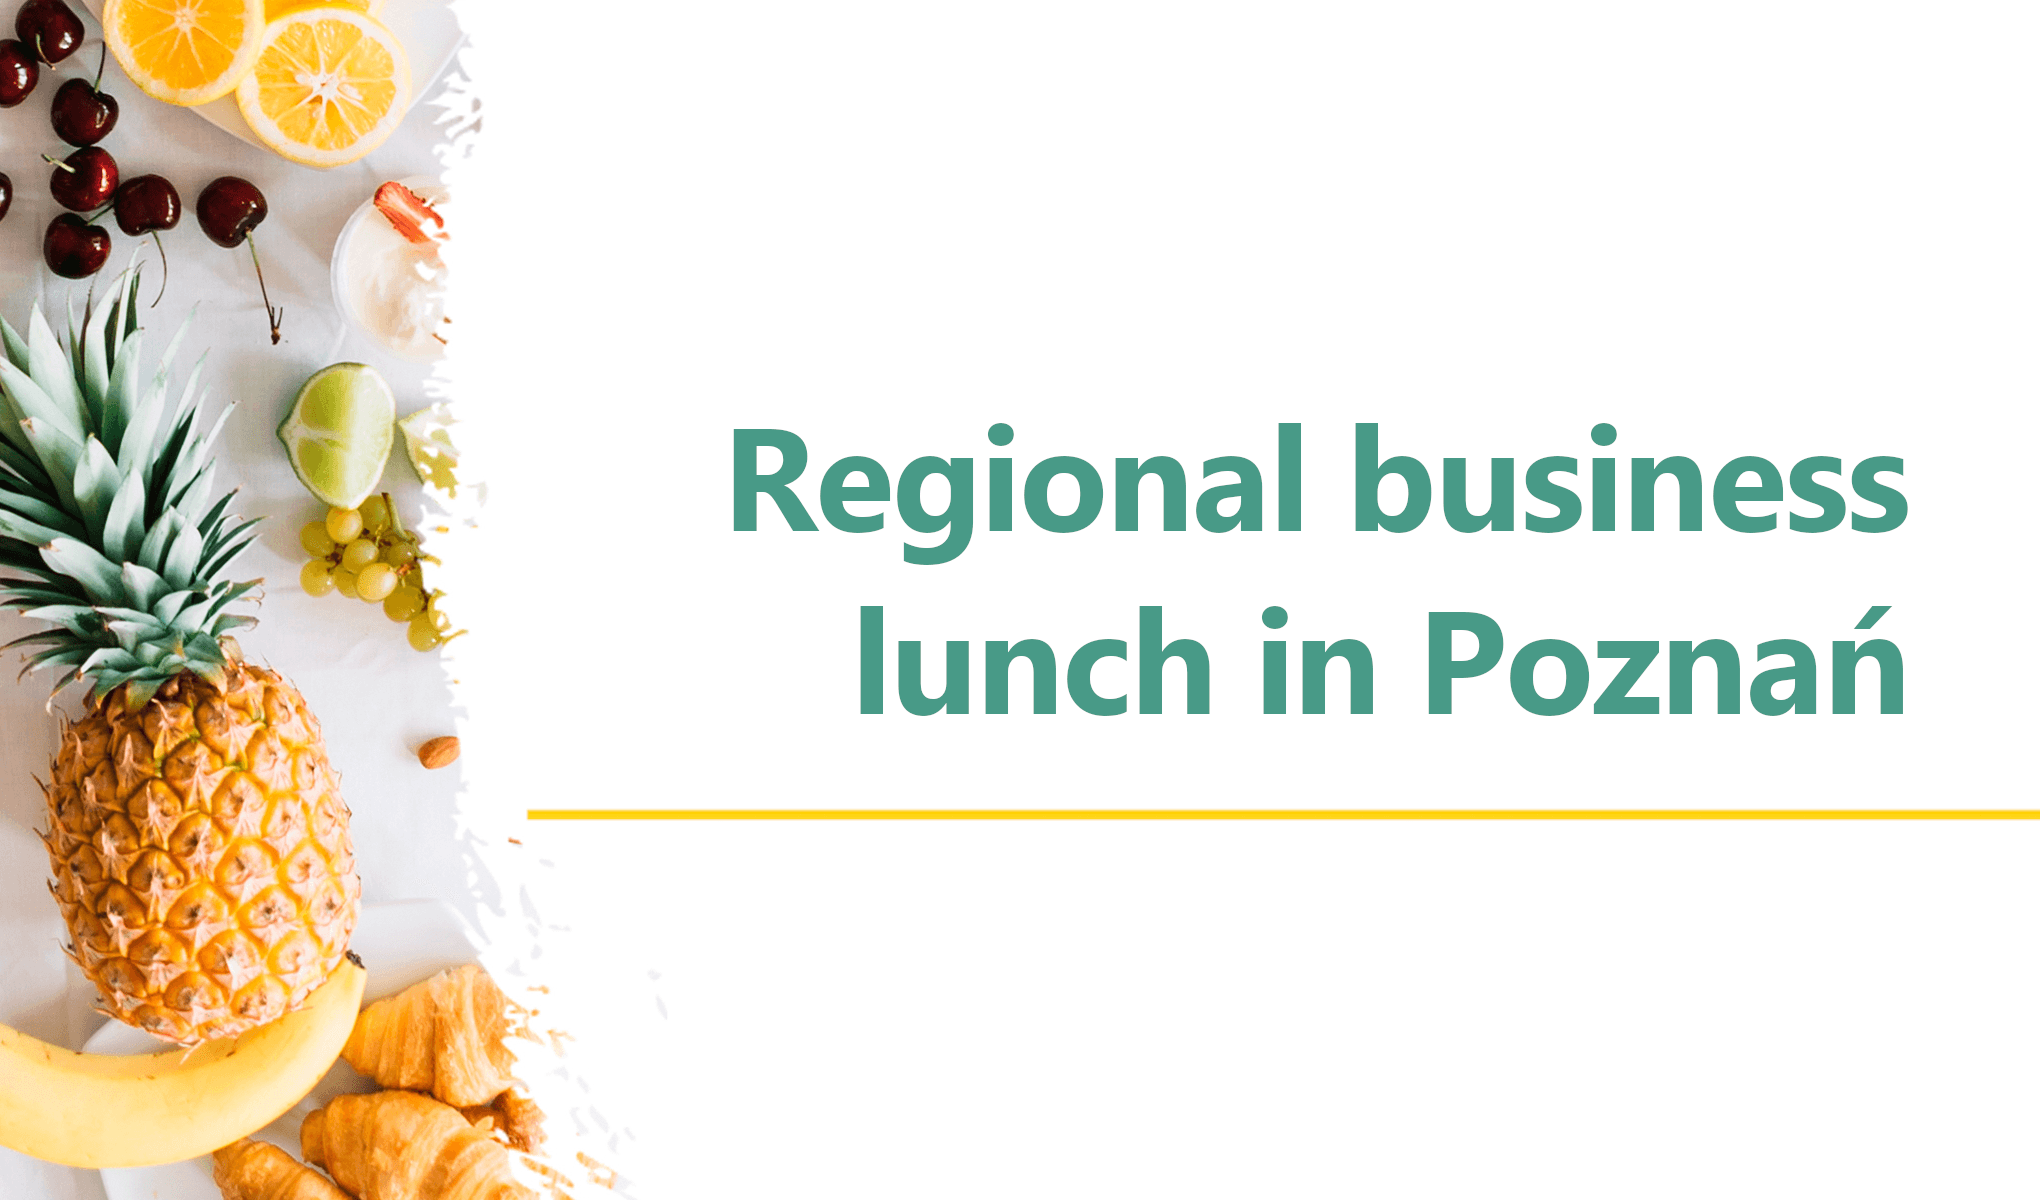 Regional business lunch in Poznań